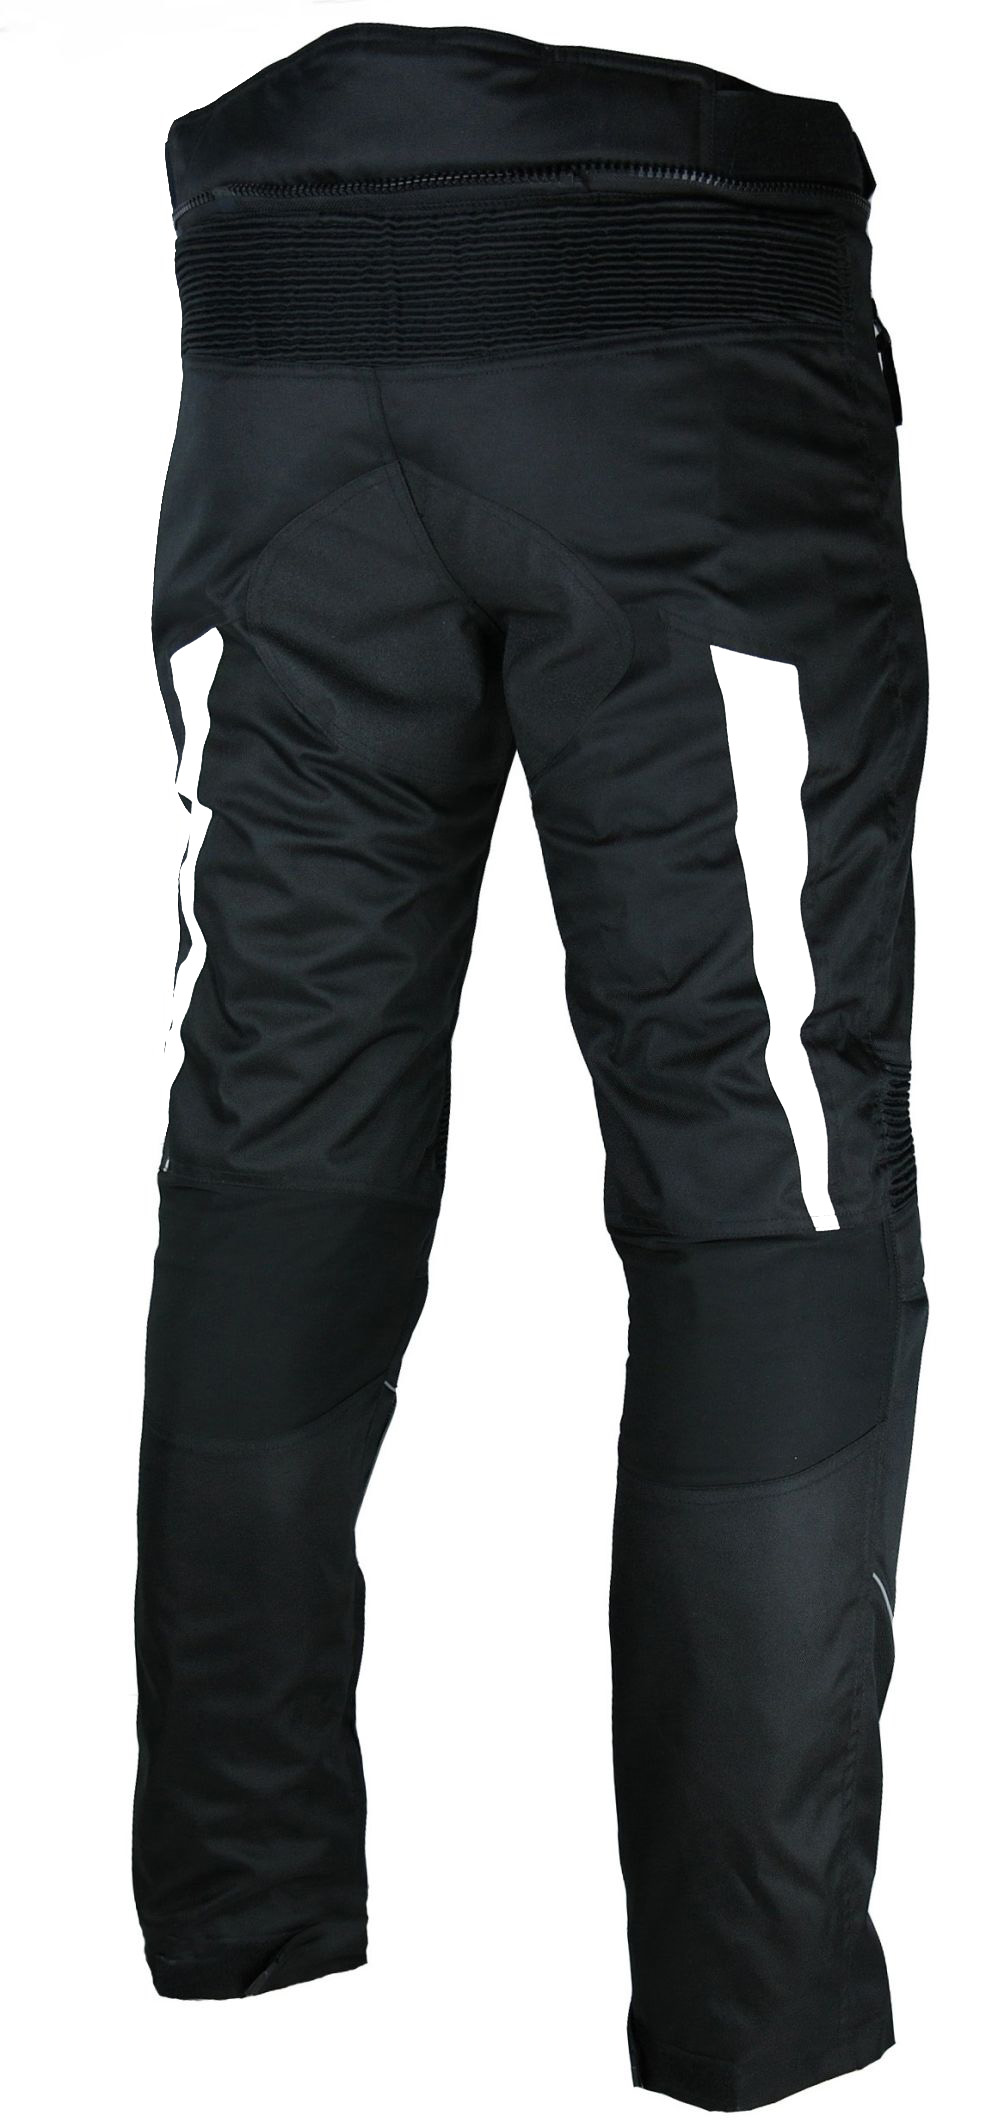 Heyberry Motorradhose Textil mit Oberschenkeltaschen M L XL XXL 3XL 